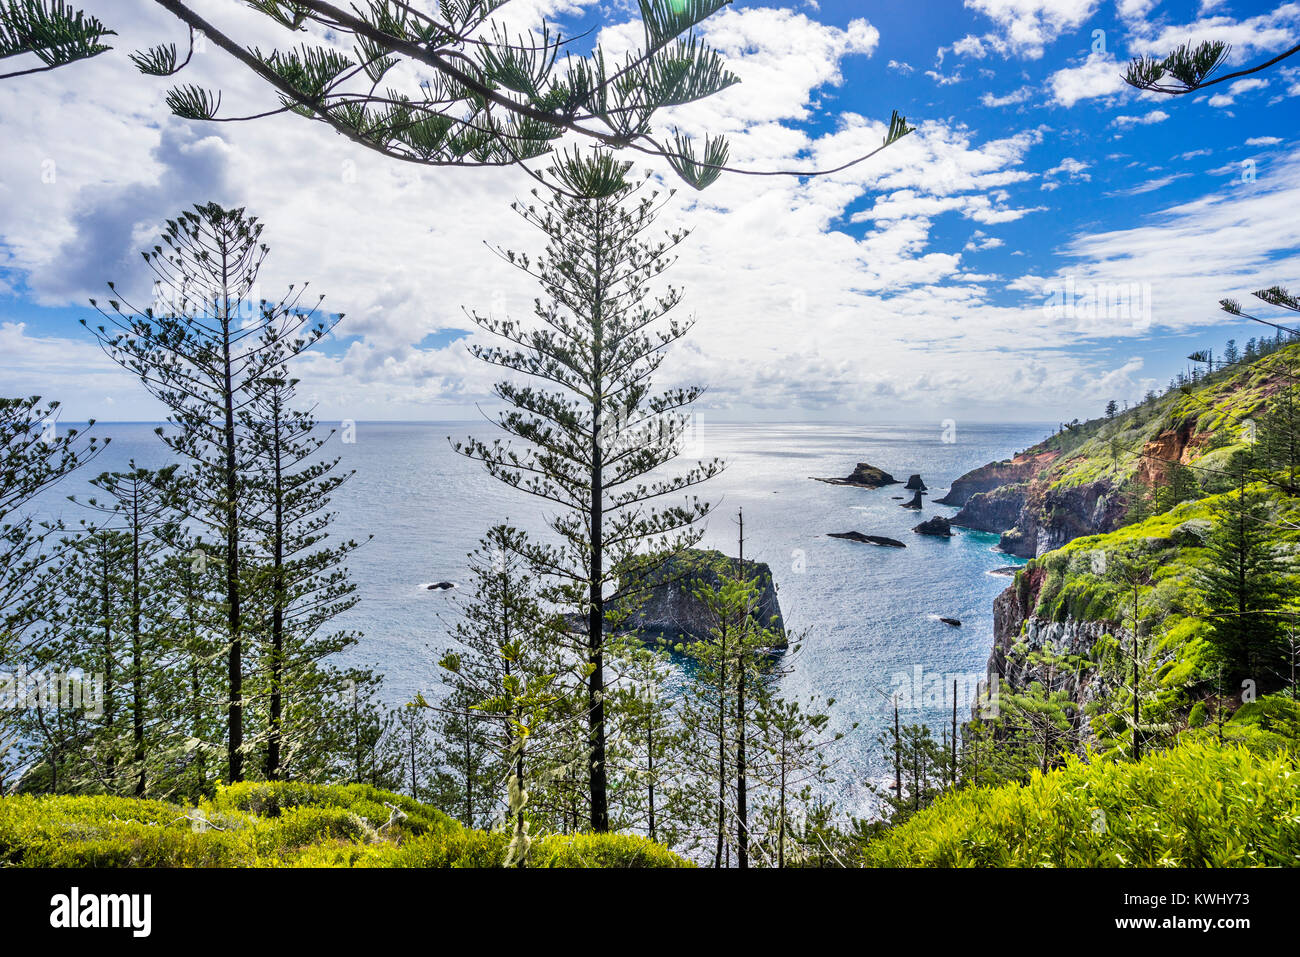 Norfolk Island, Australische externe Gebiet, Norfolk Island National Park, majestätischen Norfolk Insel Kiefern (Araucaria araucana) wachsen an der Seite o Stockfoto